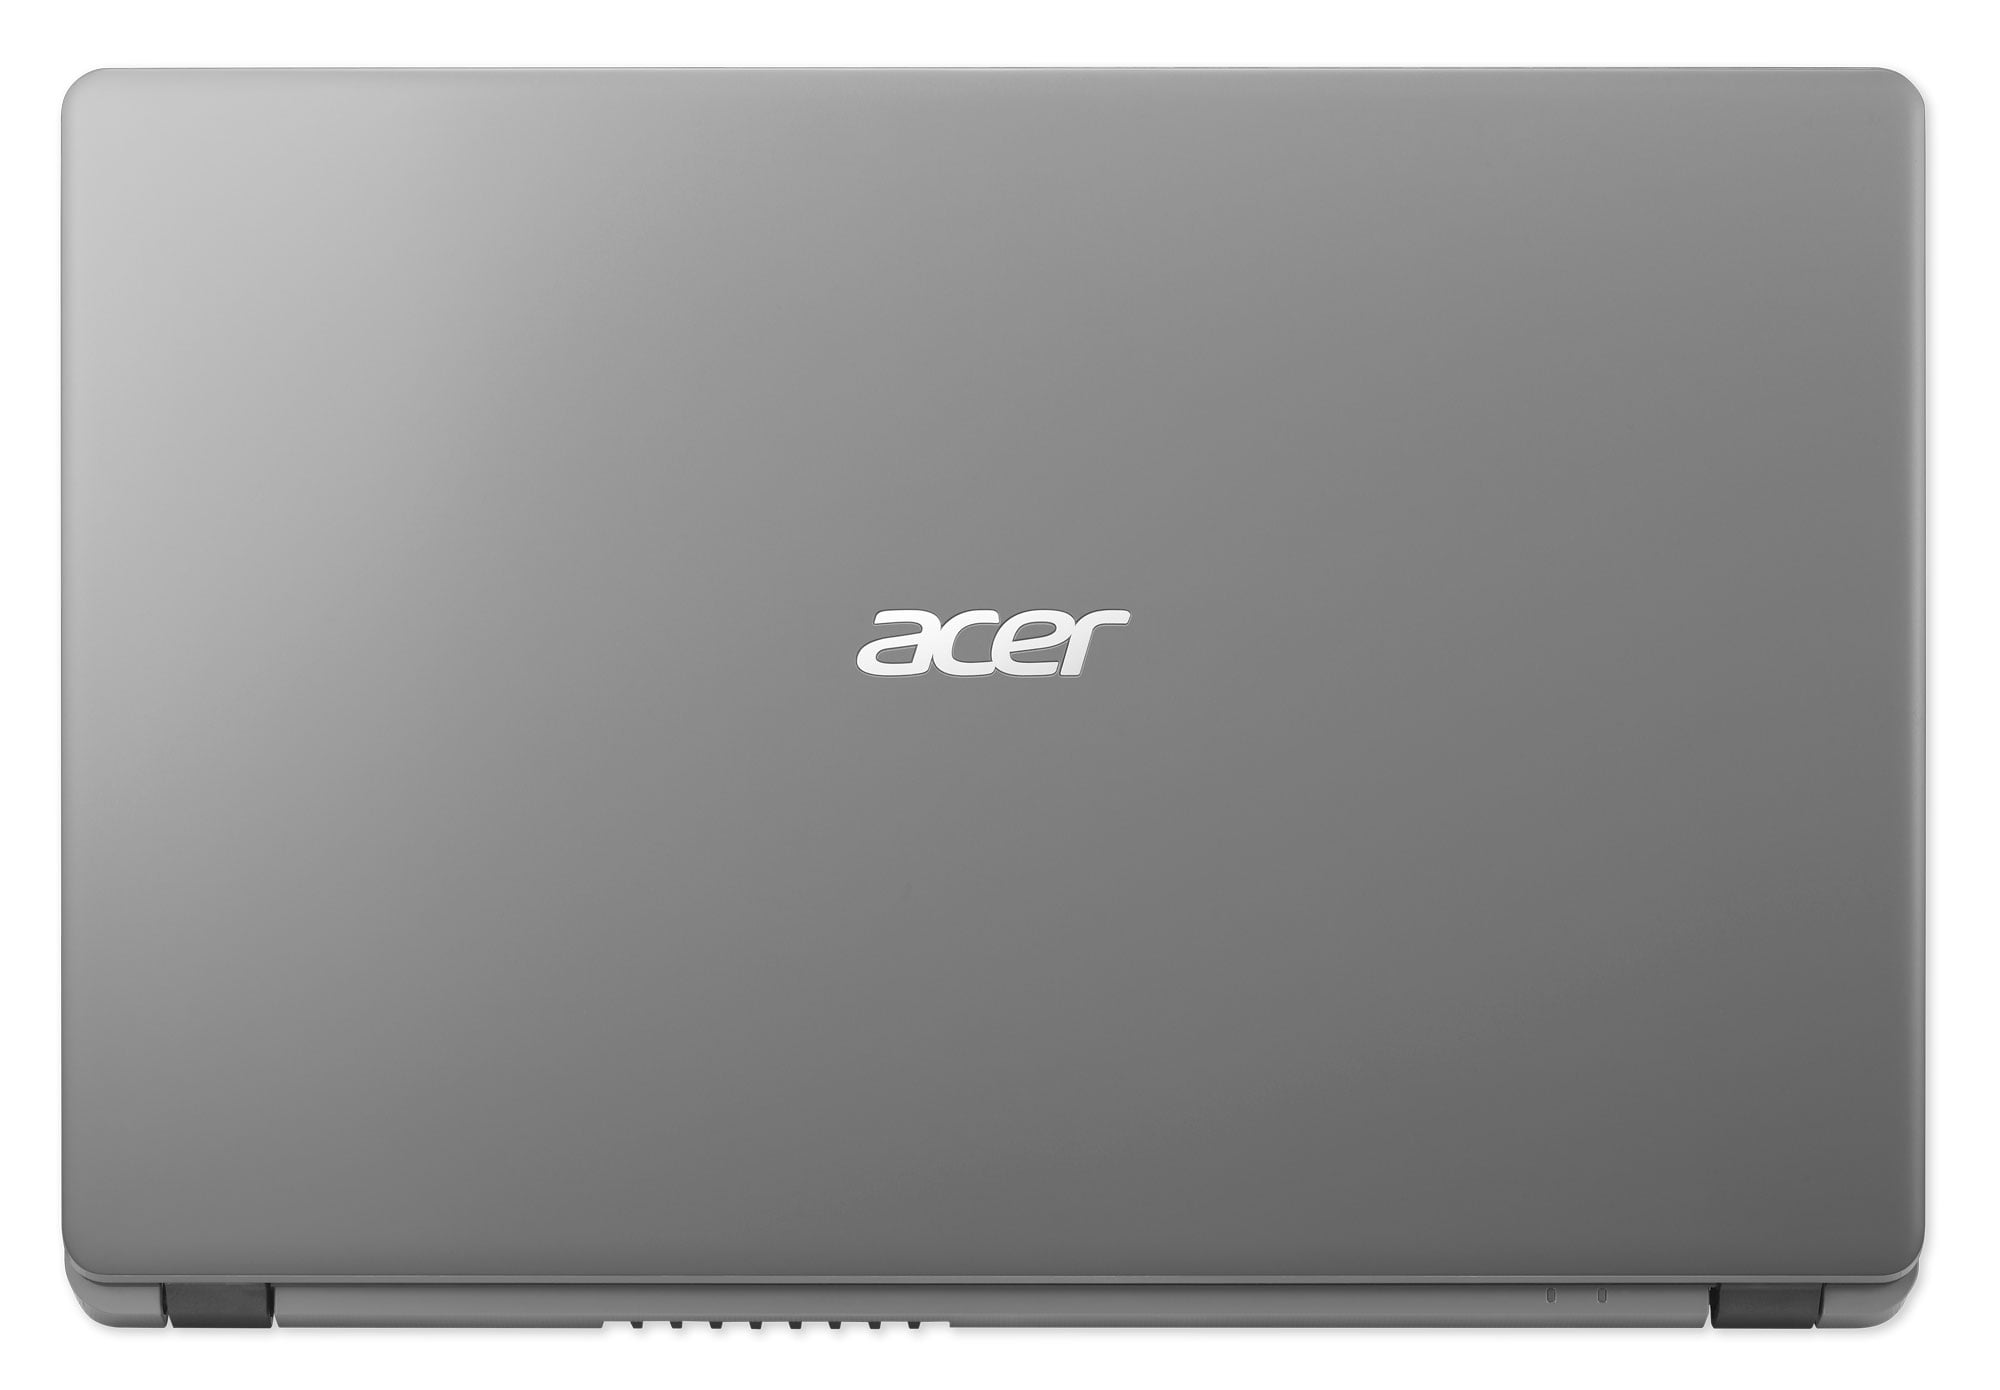 Acer Aspire 3 A315-56-594W, 15.6 Full HD, 10th Gen Intel Core i5-1035G1,  8GB DDR4, 256GB NVMe SSD, Windows 10 Home